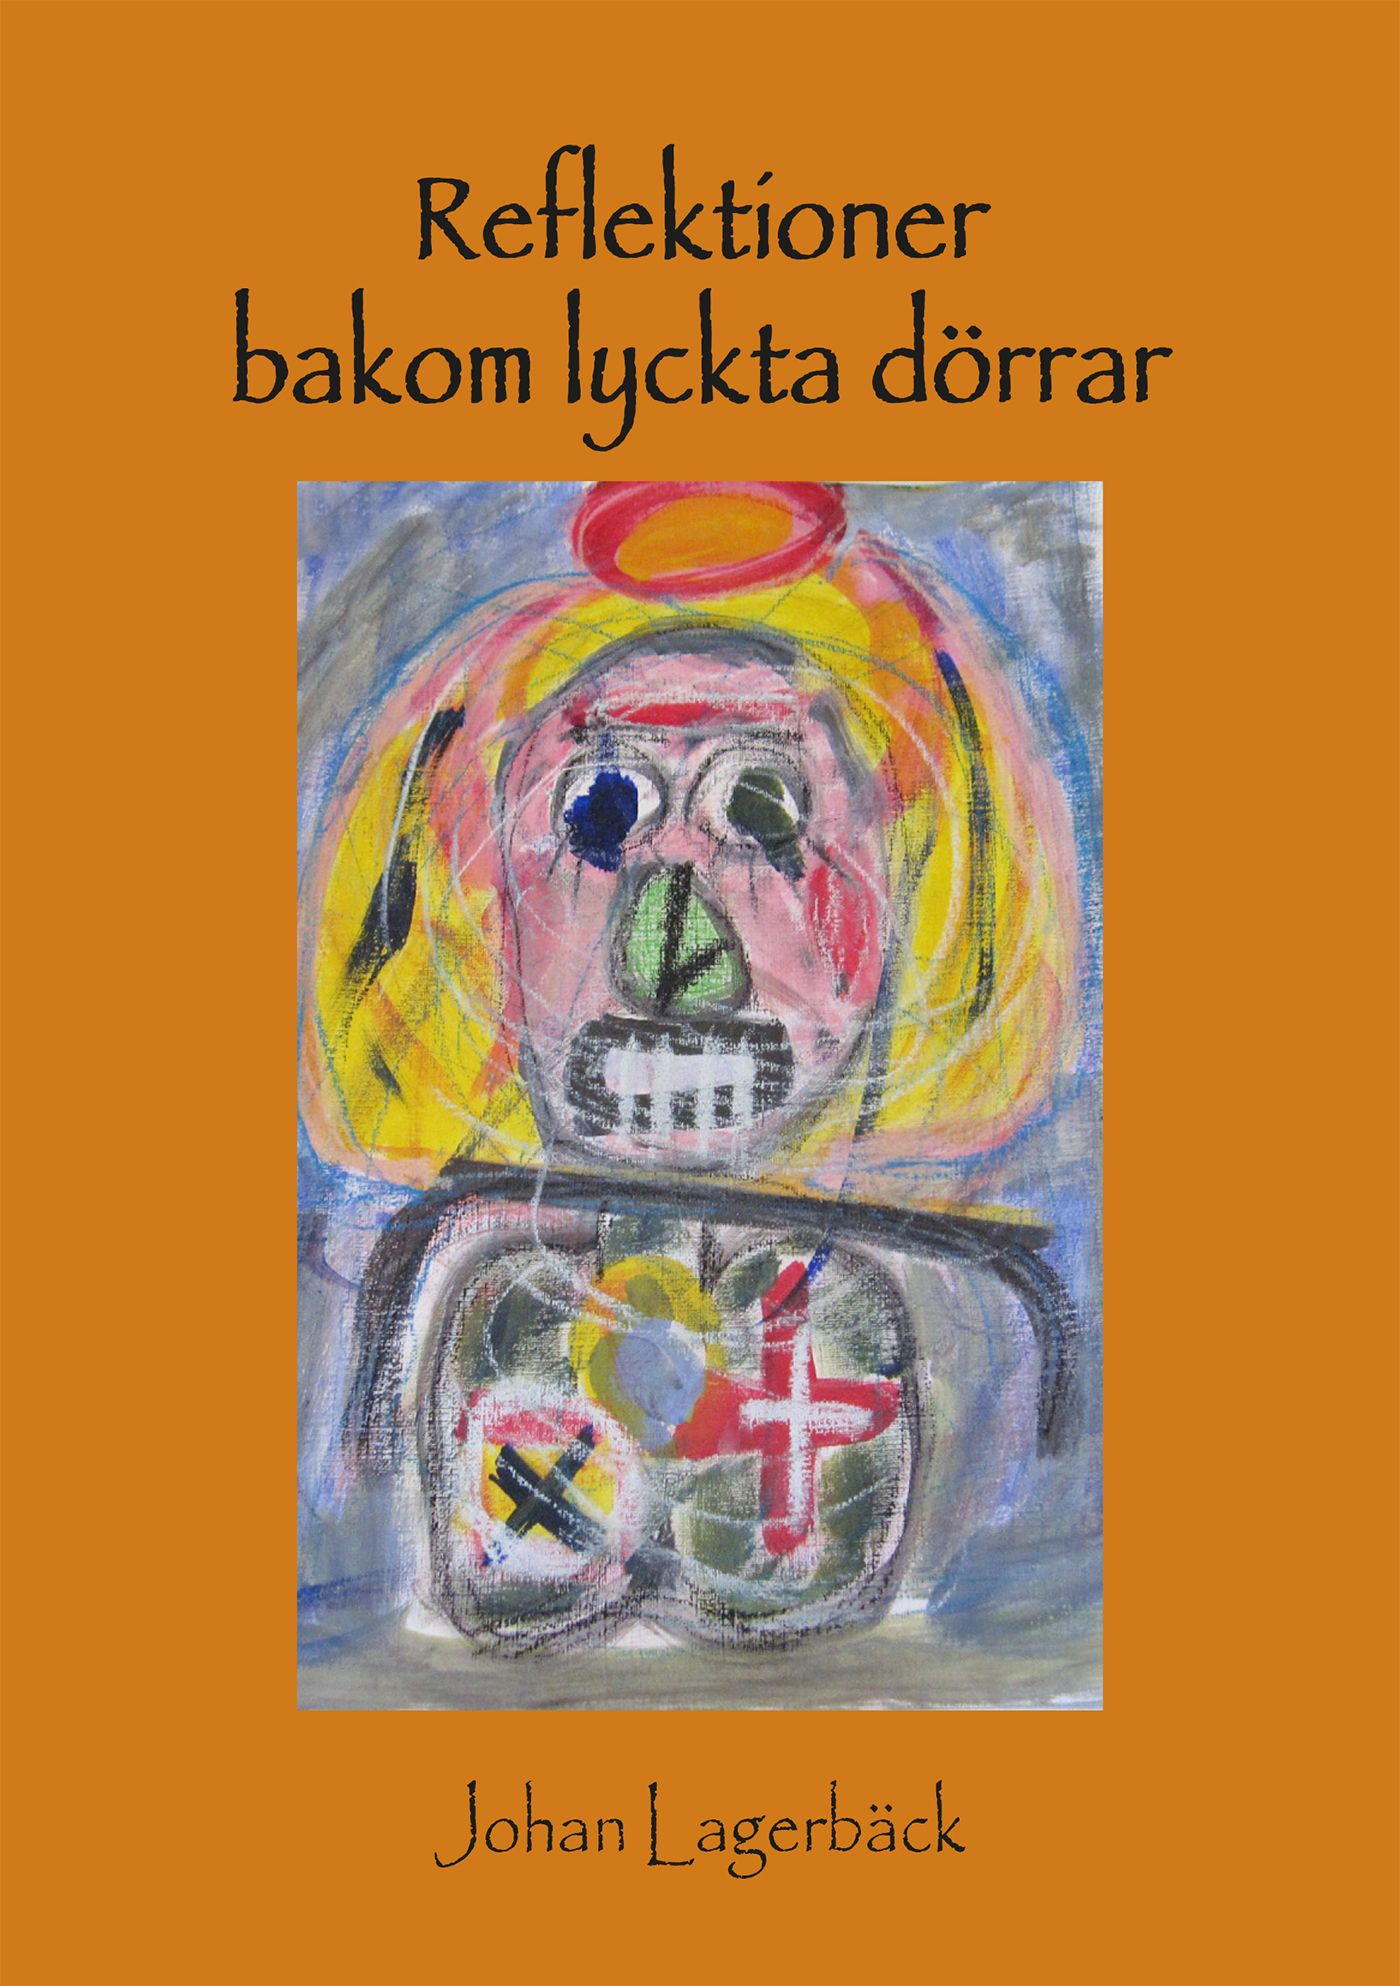 Reflektioner bakom lyckta dörrar, e-bok av Johan Lagerbäck